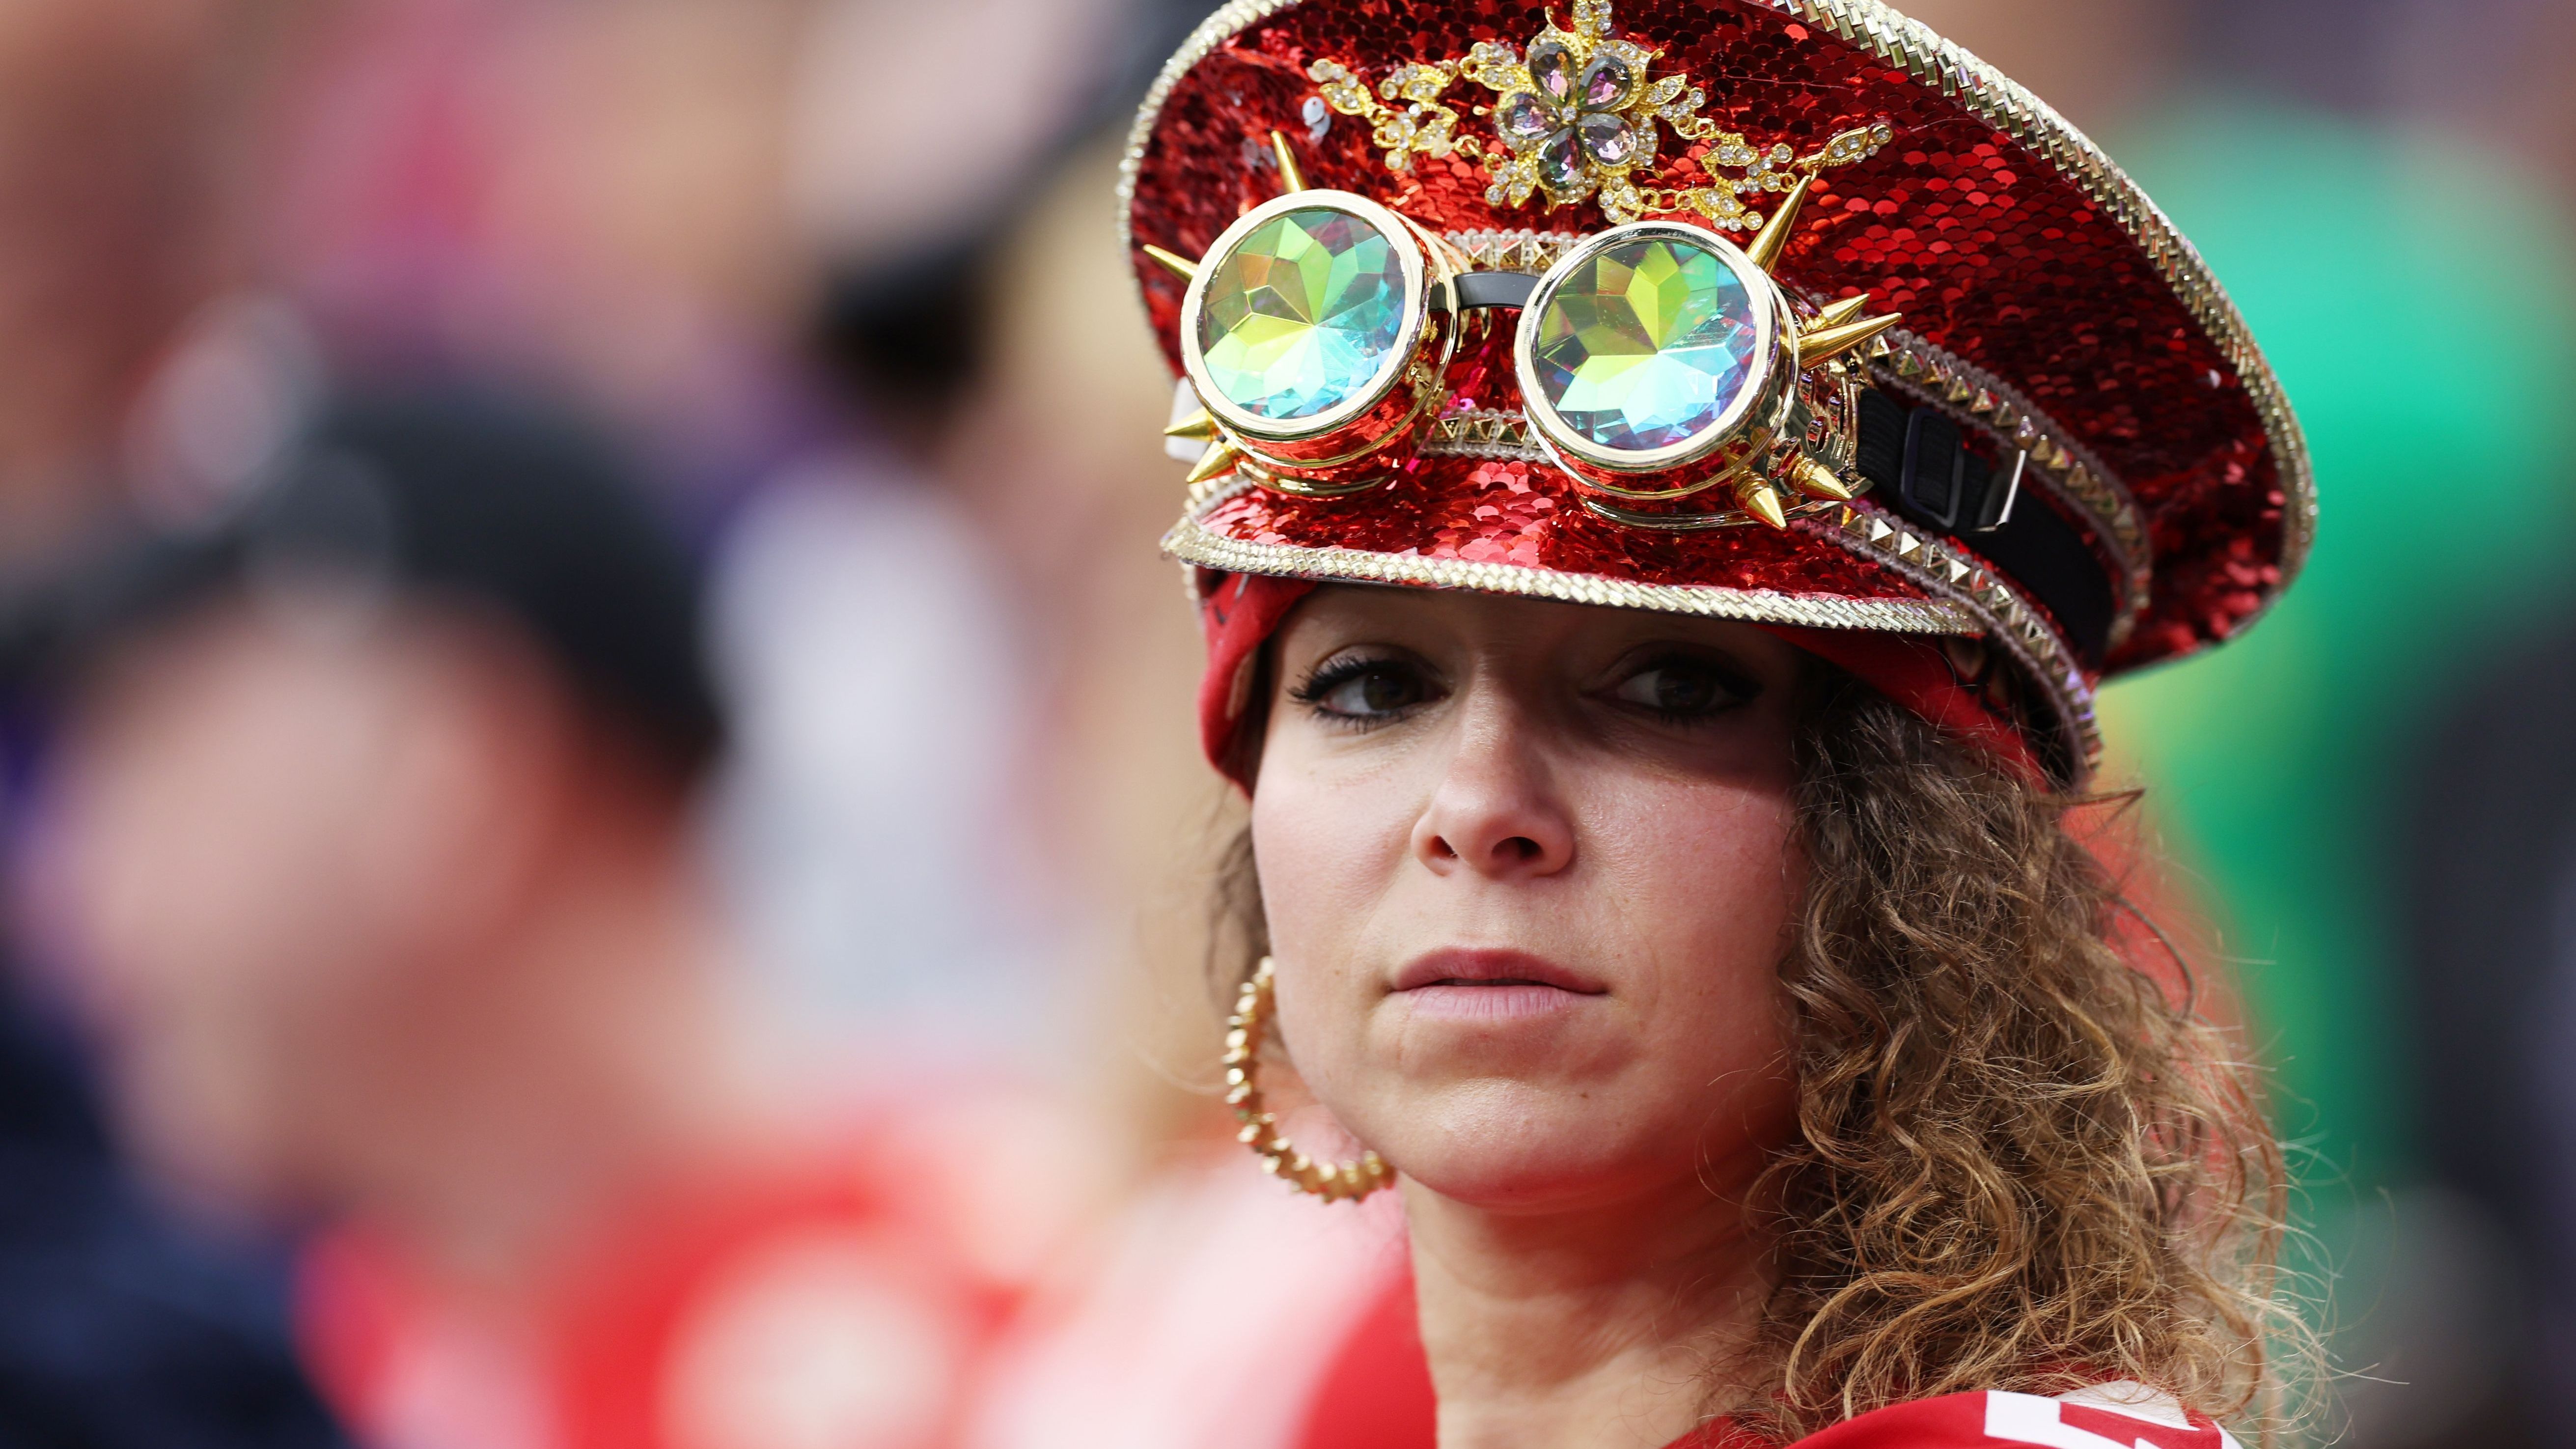 <strong>Dieser Chiefs-Fan ist nicht berühmt...</strong><br>...aber trägt ein sehr kreatives Outfit. Damit wäre sie auch im deutschen Karneval gerne gesehen.